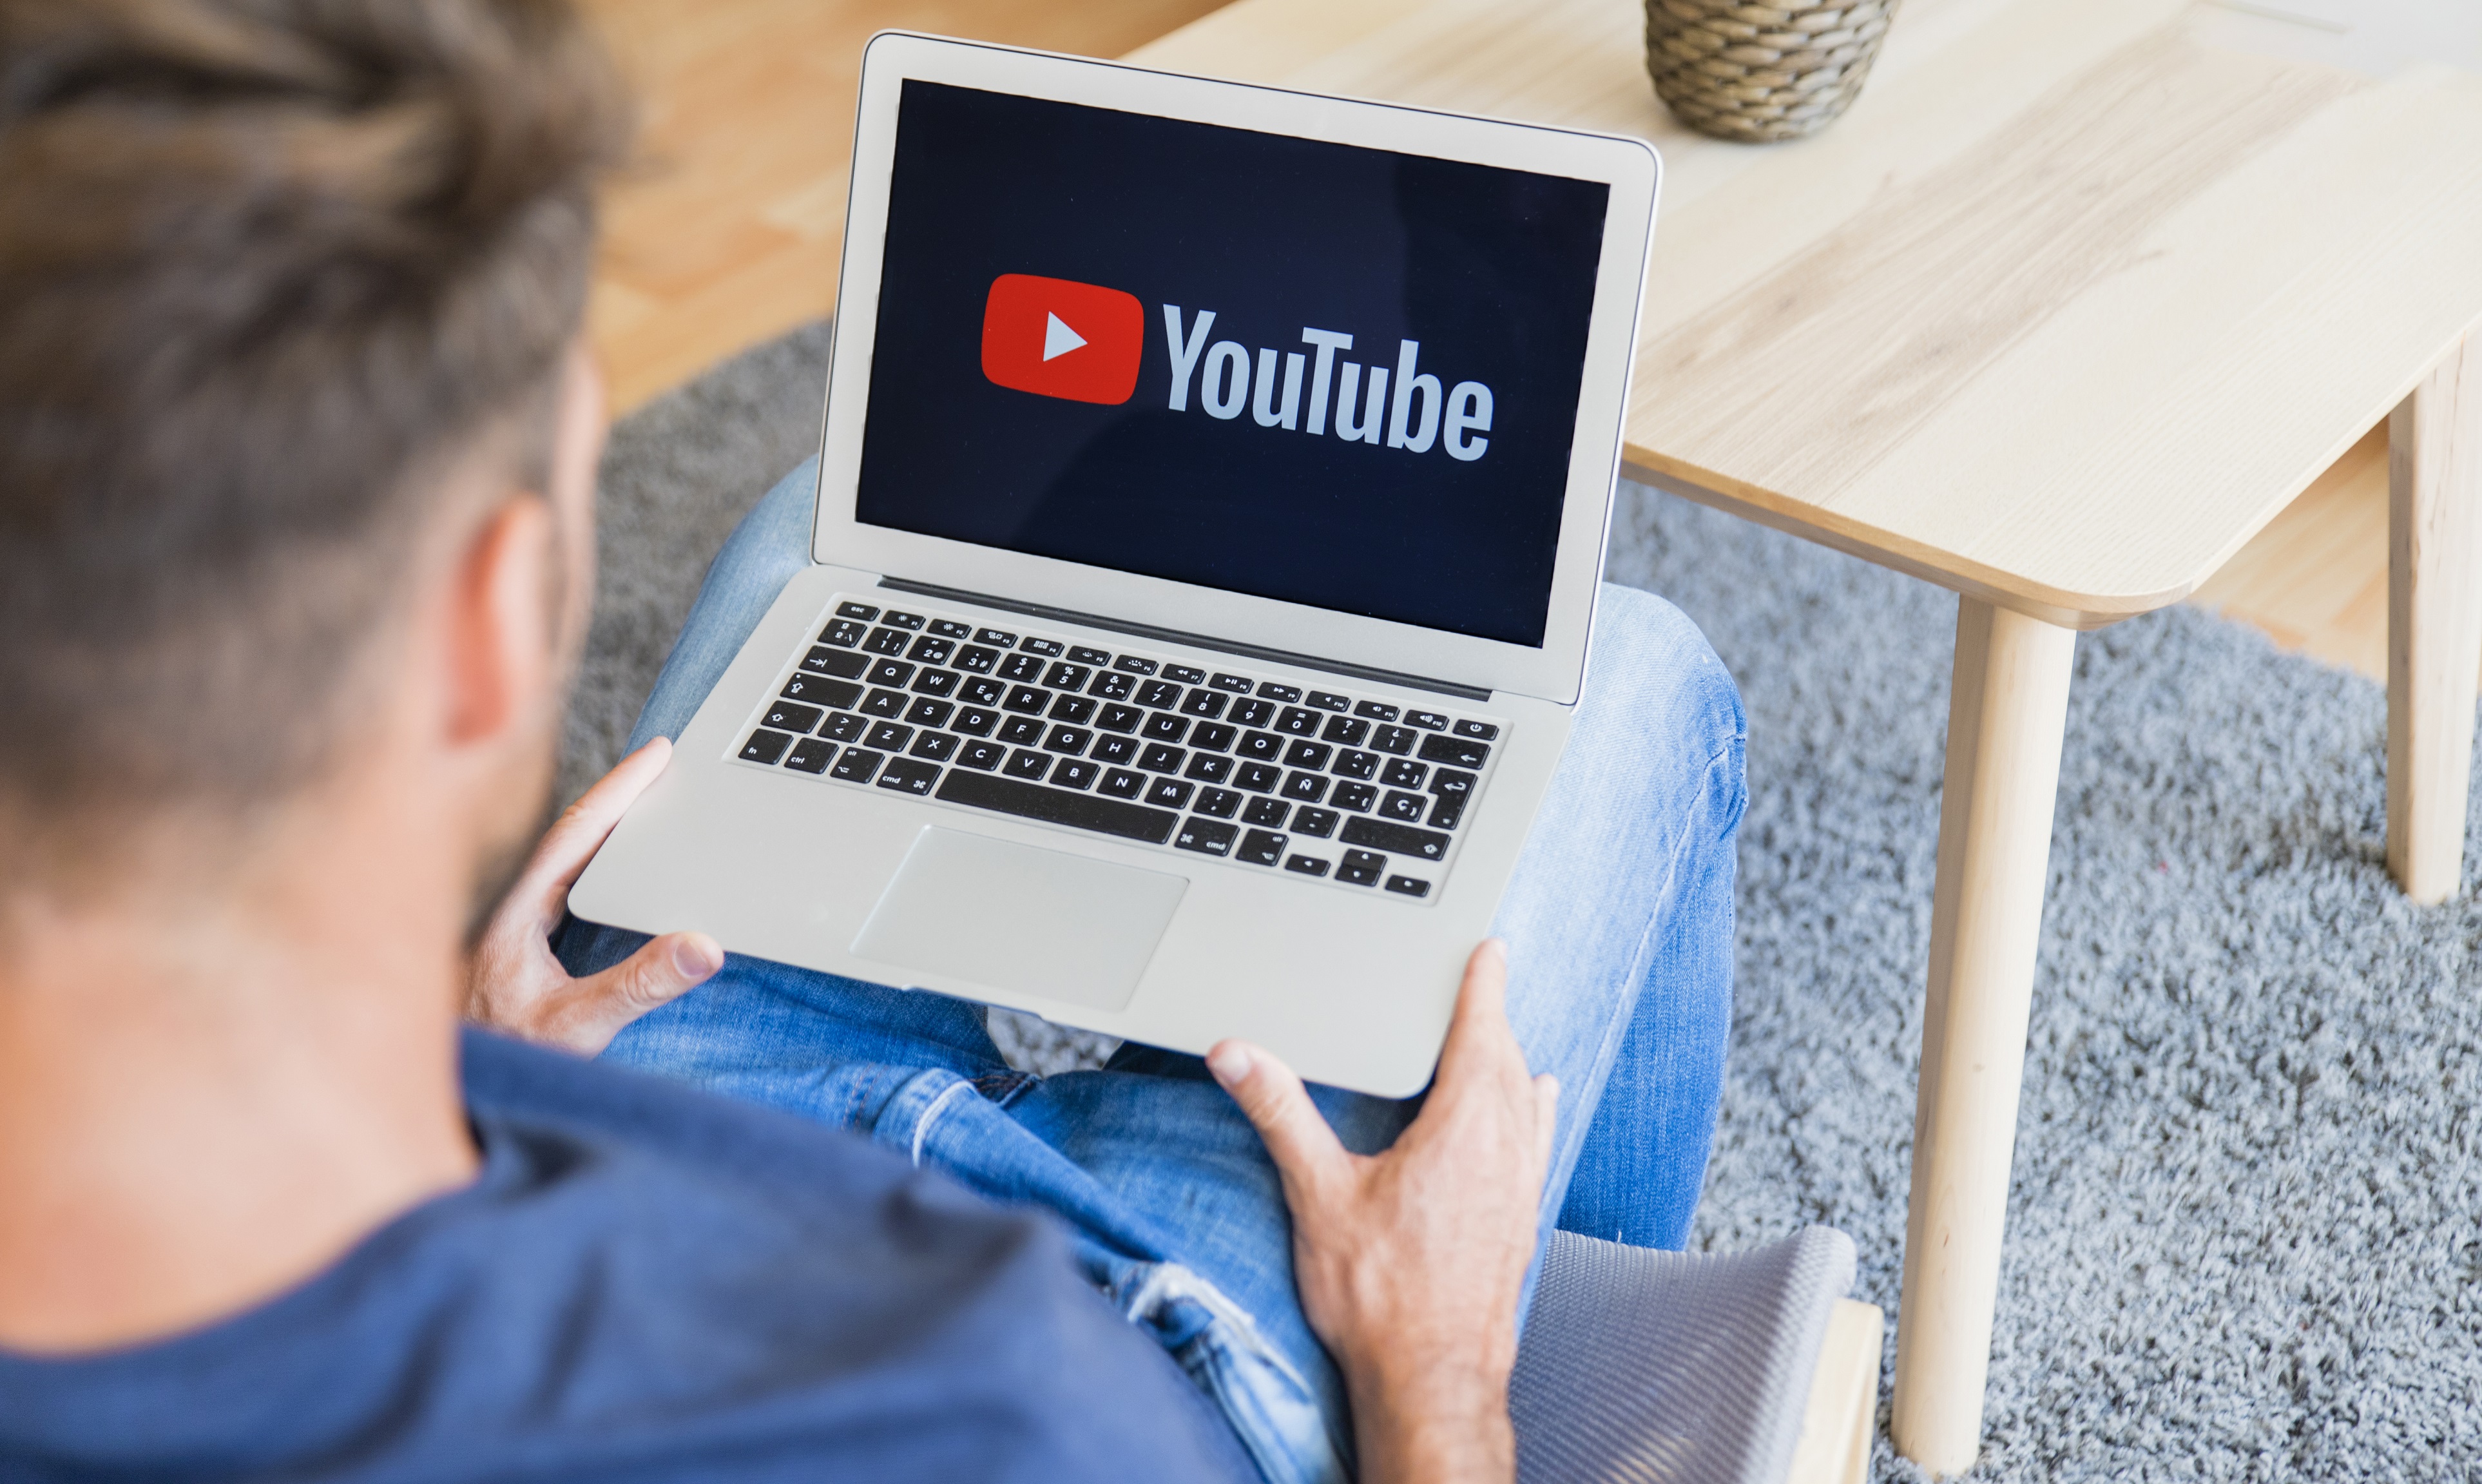 Fitur-fitur Terbaru YouTube yang Bakal Hadir Tahun Ini